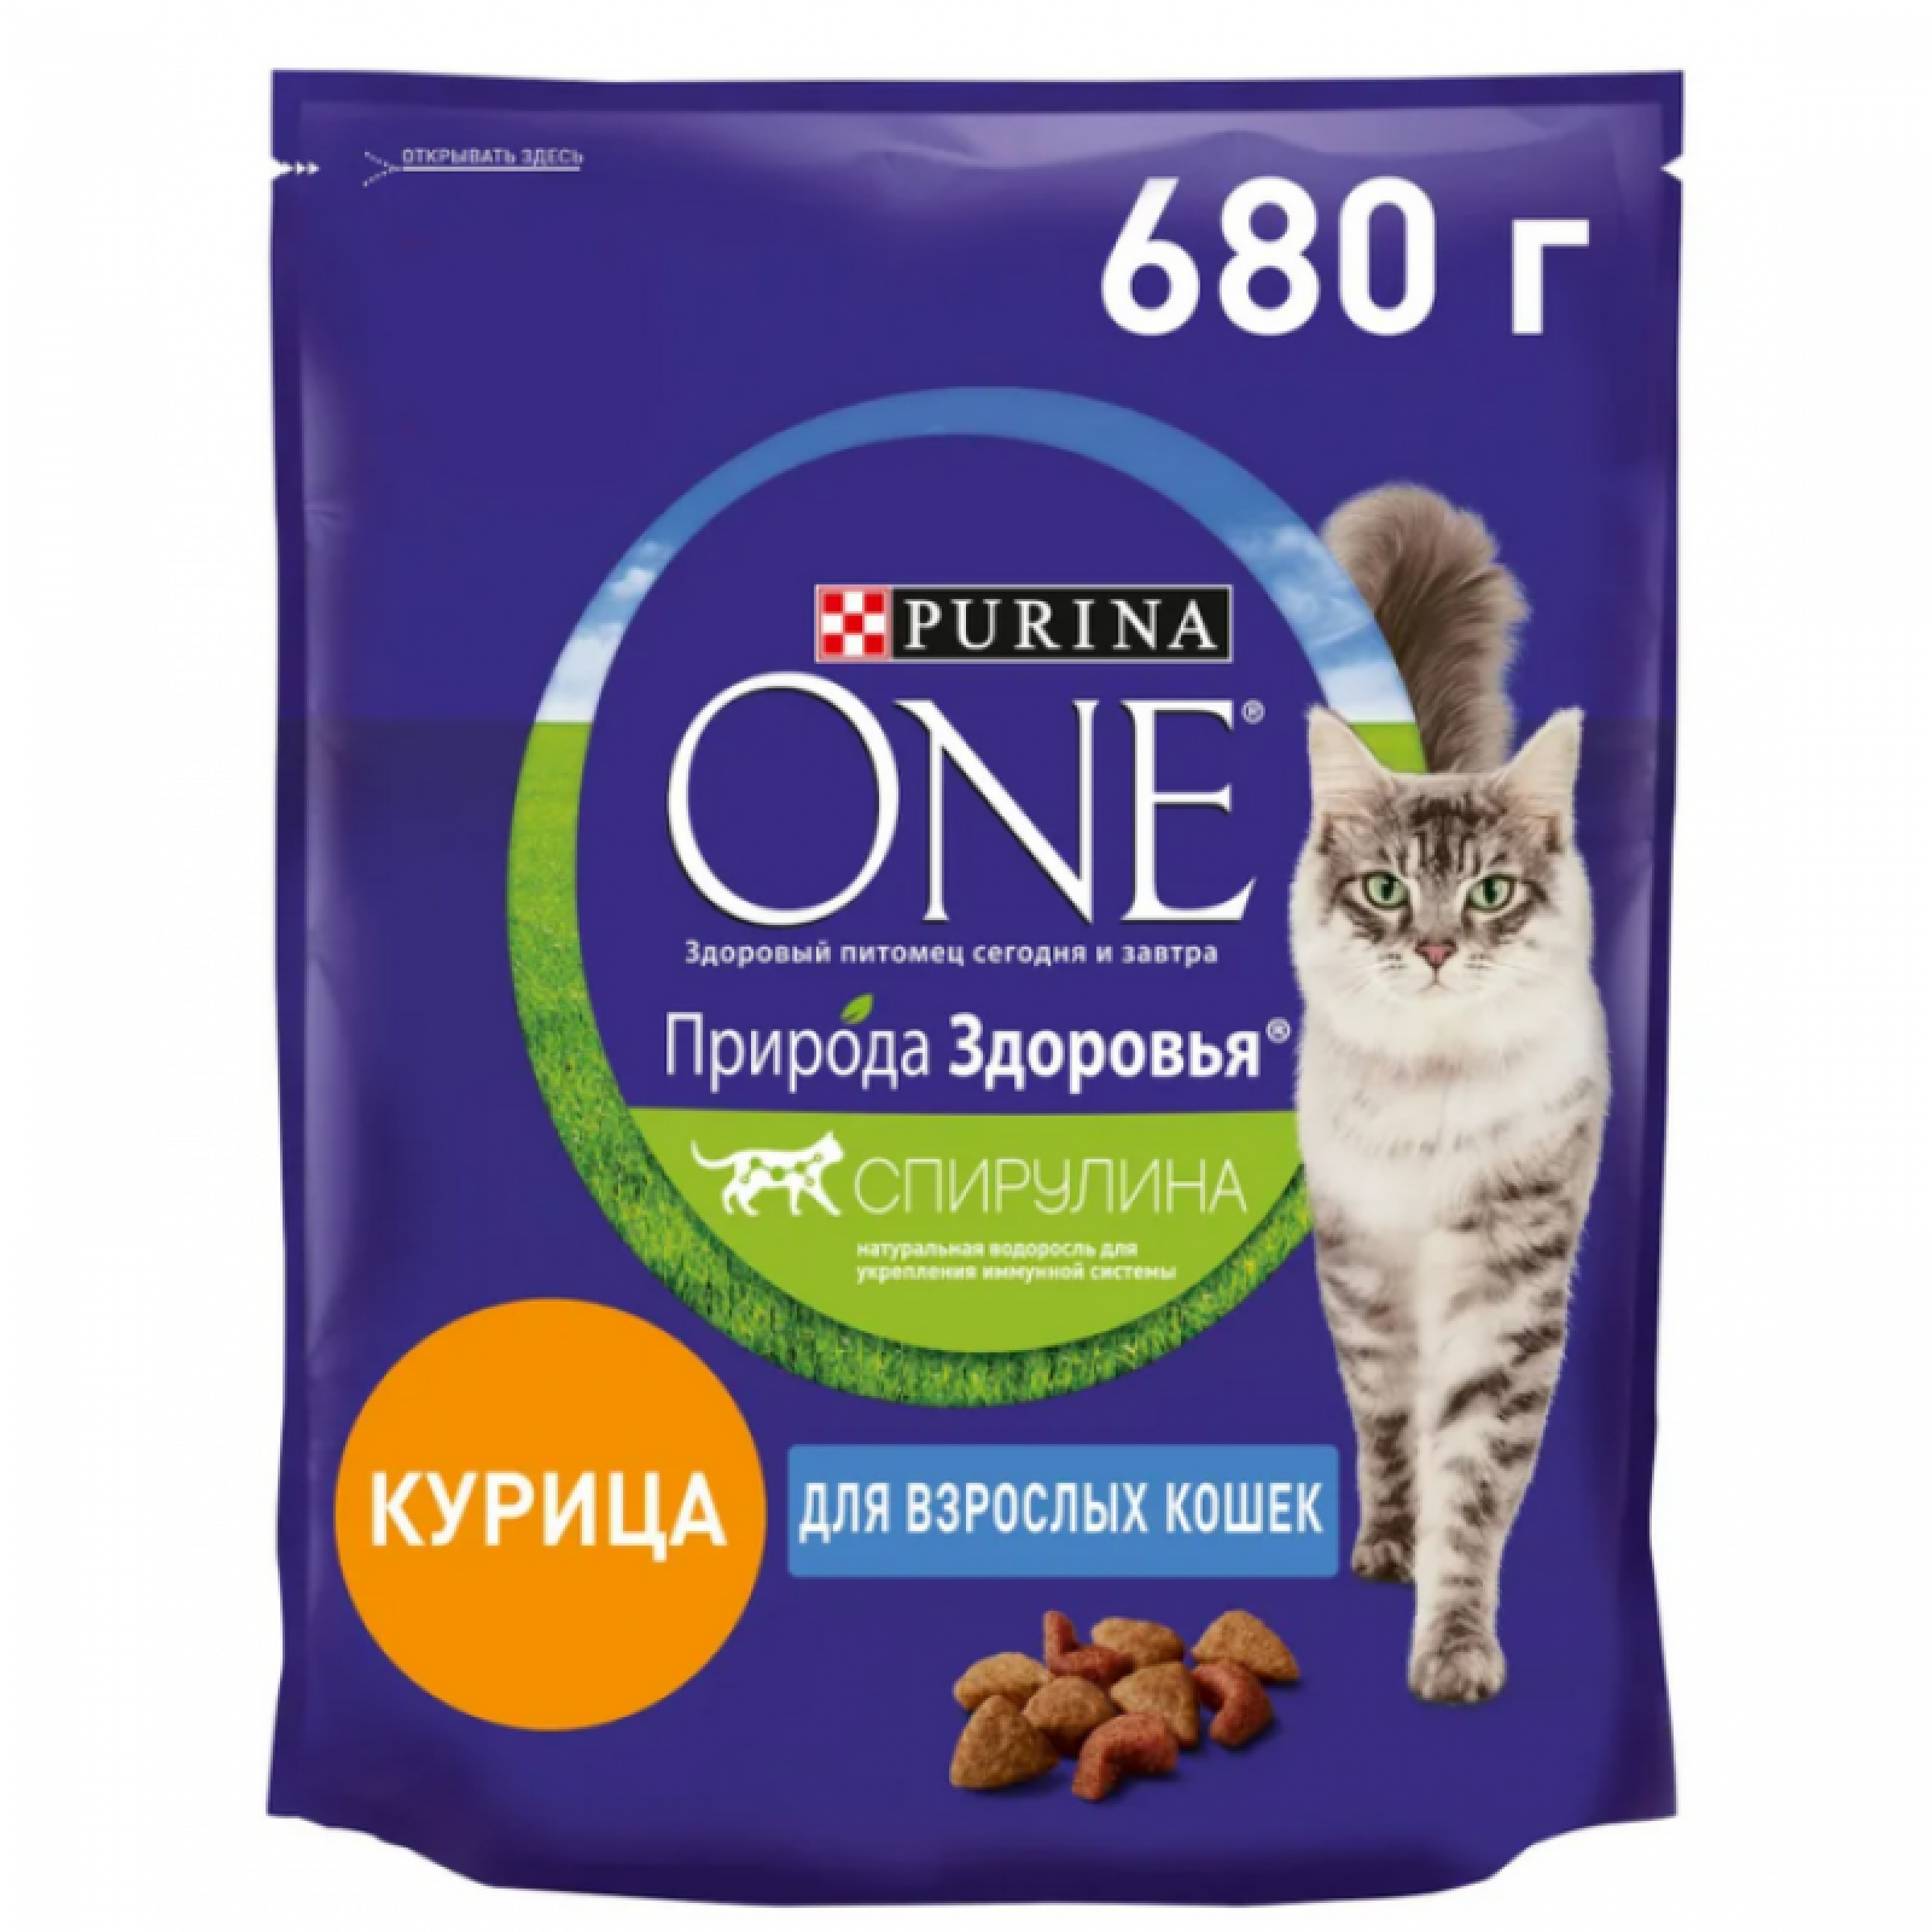 Сухой корм Purina One Природа Здоровья для стерилизованных кошек и кастрированных котов с говядиной, 680 г